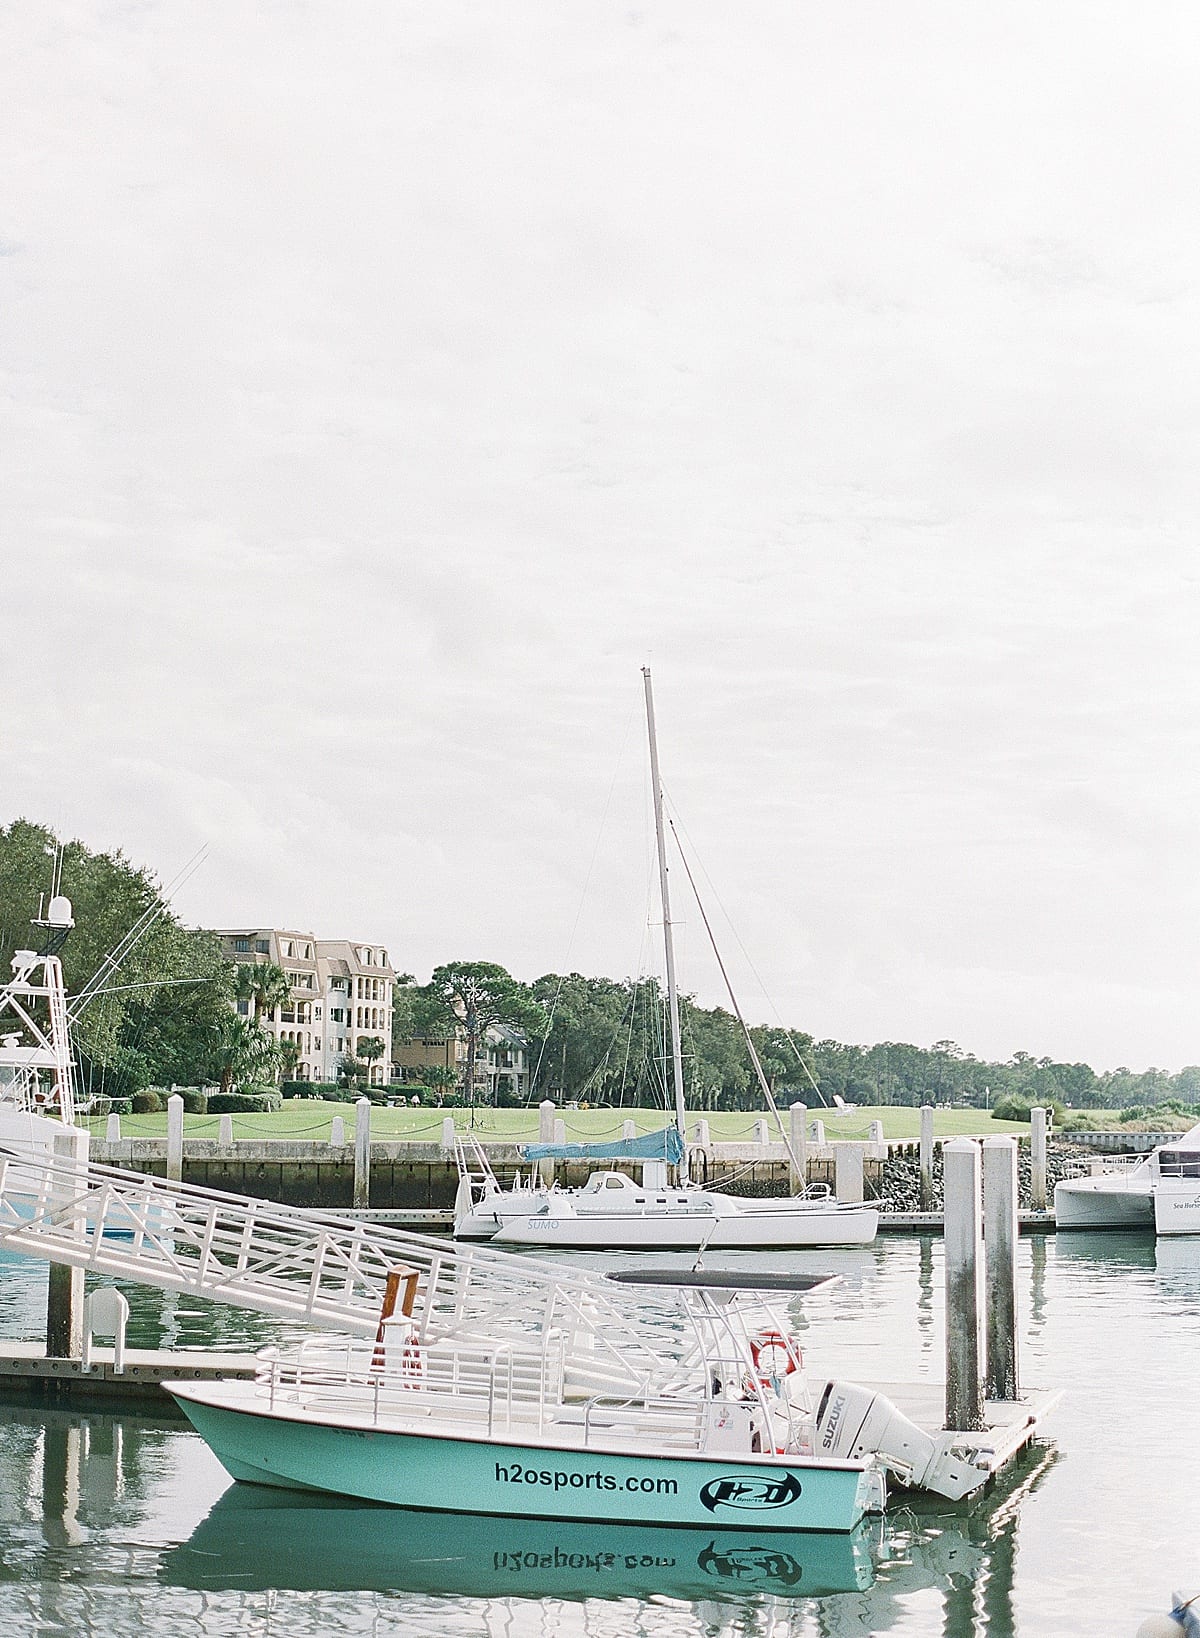 Hilton Head South Carolina Boat Dock Photo